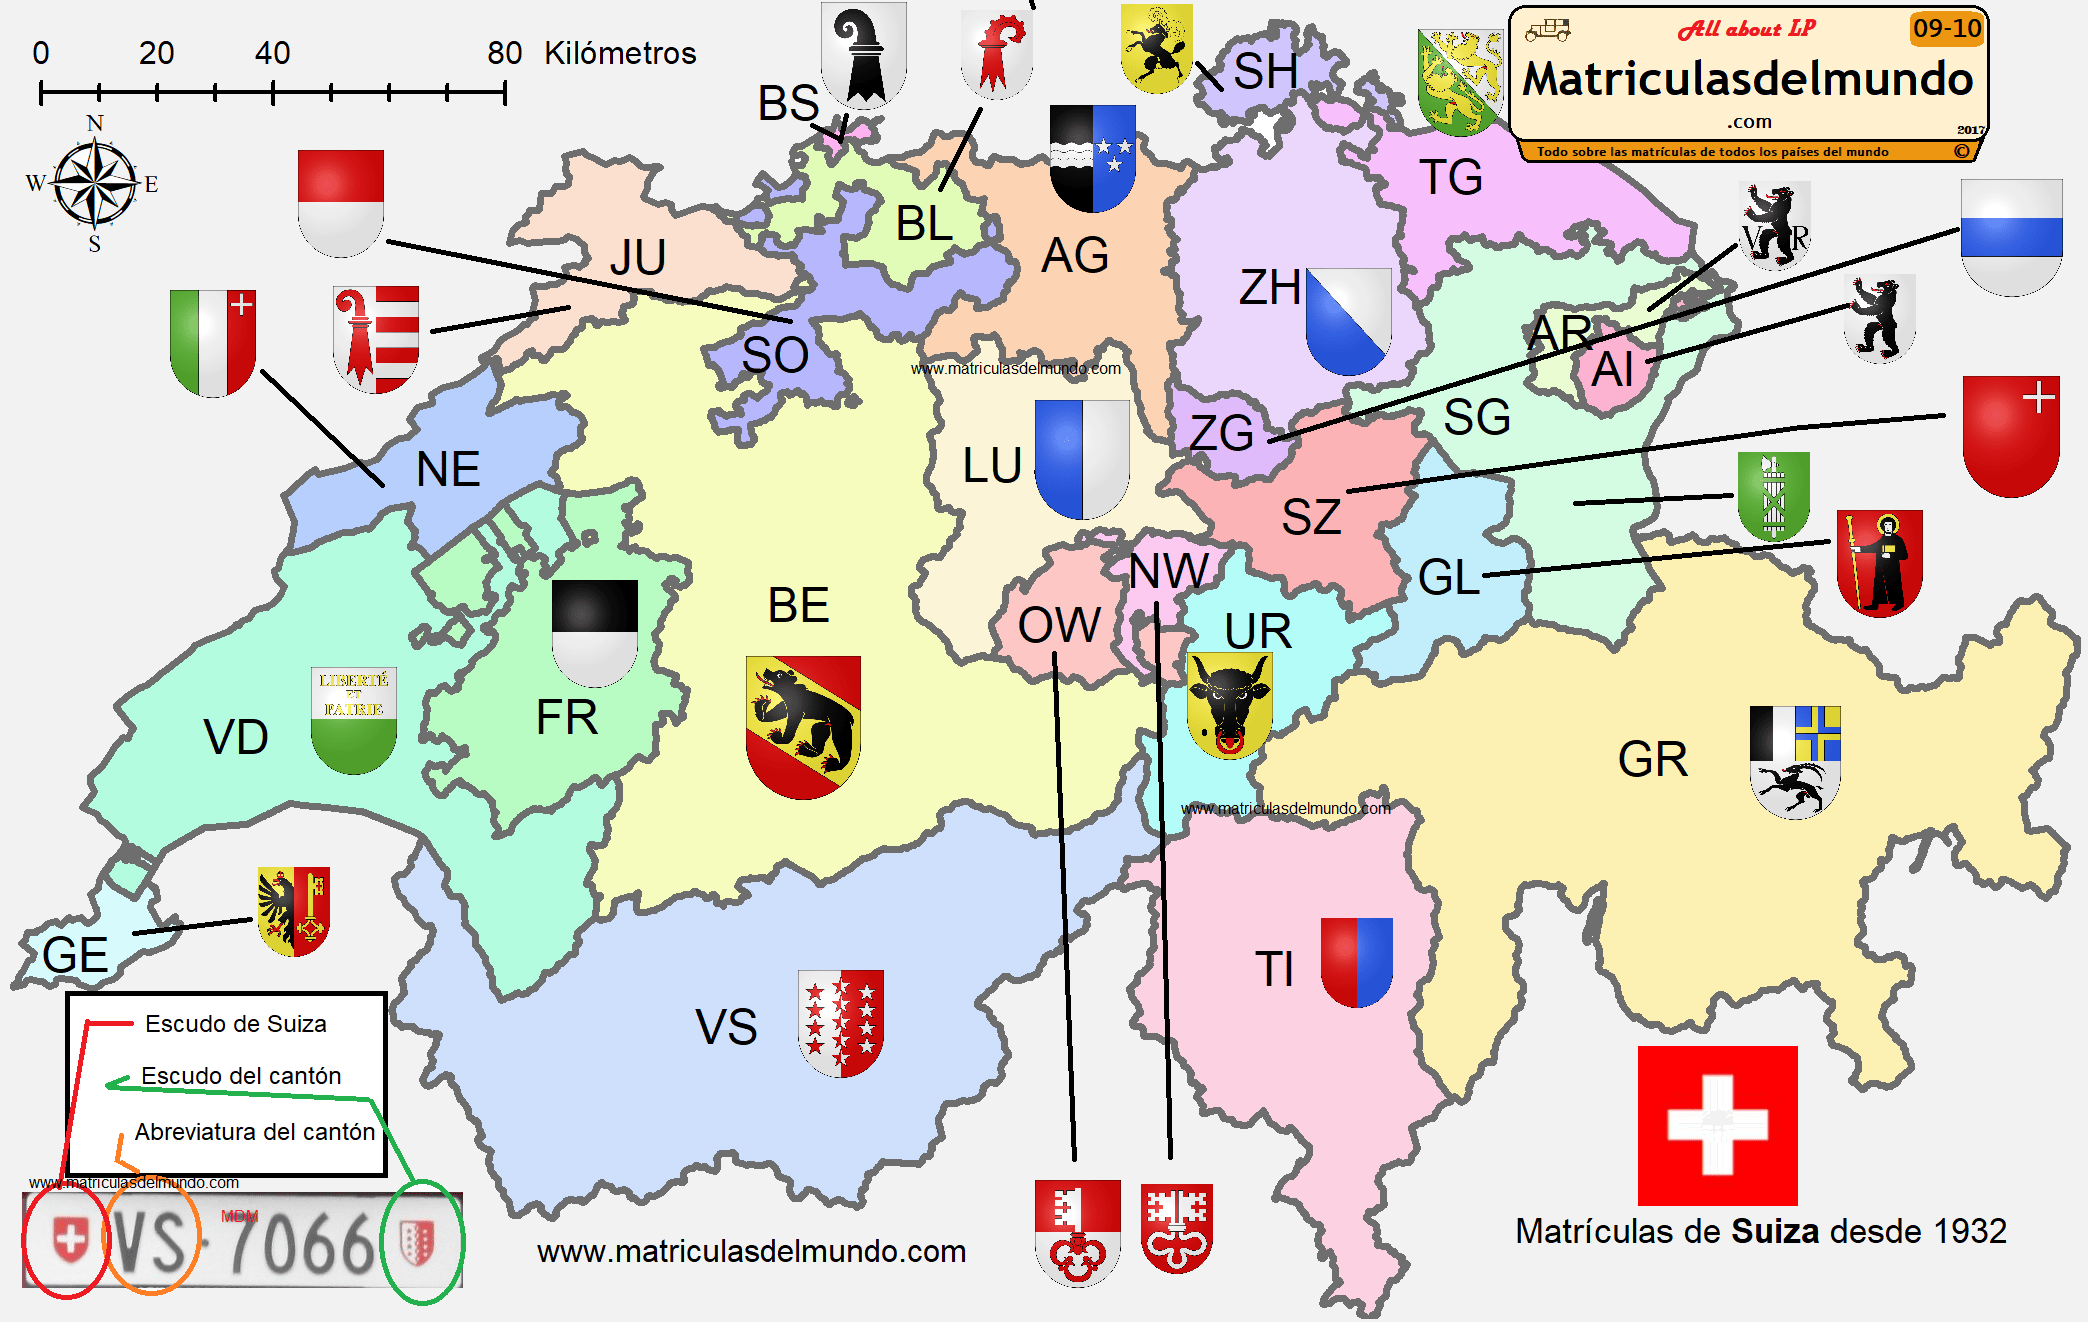 mapa por cantones y regiones de Suiza con todo detalle; sus escudos y abreviaturas